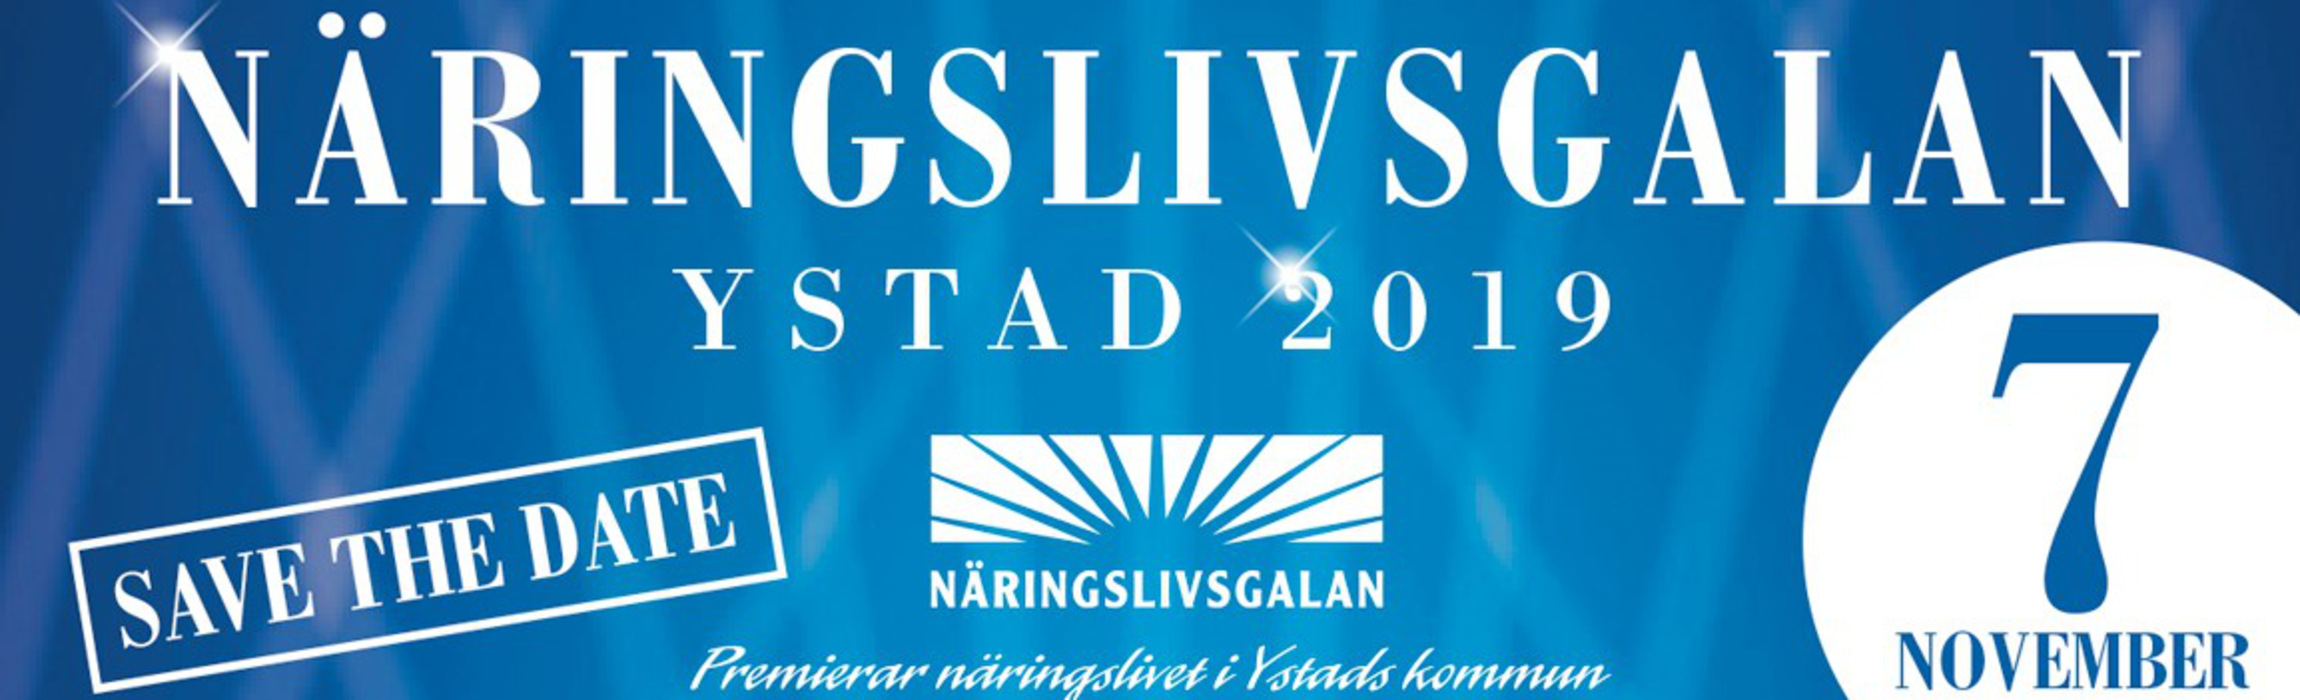 Naringslivsgala_2019.jpg